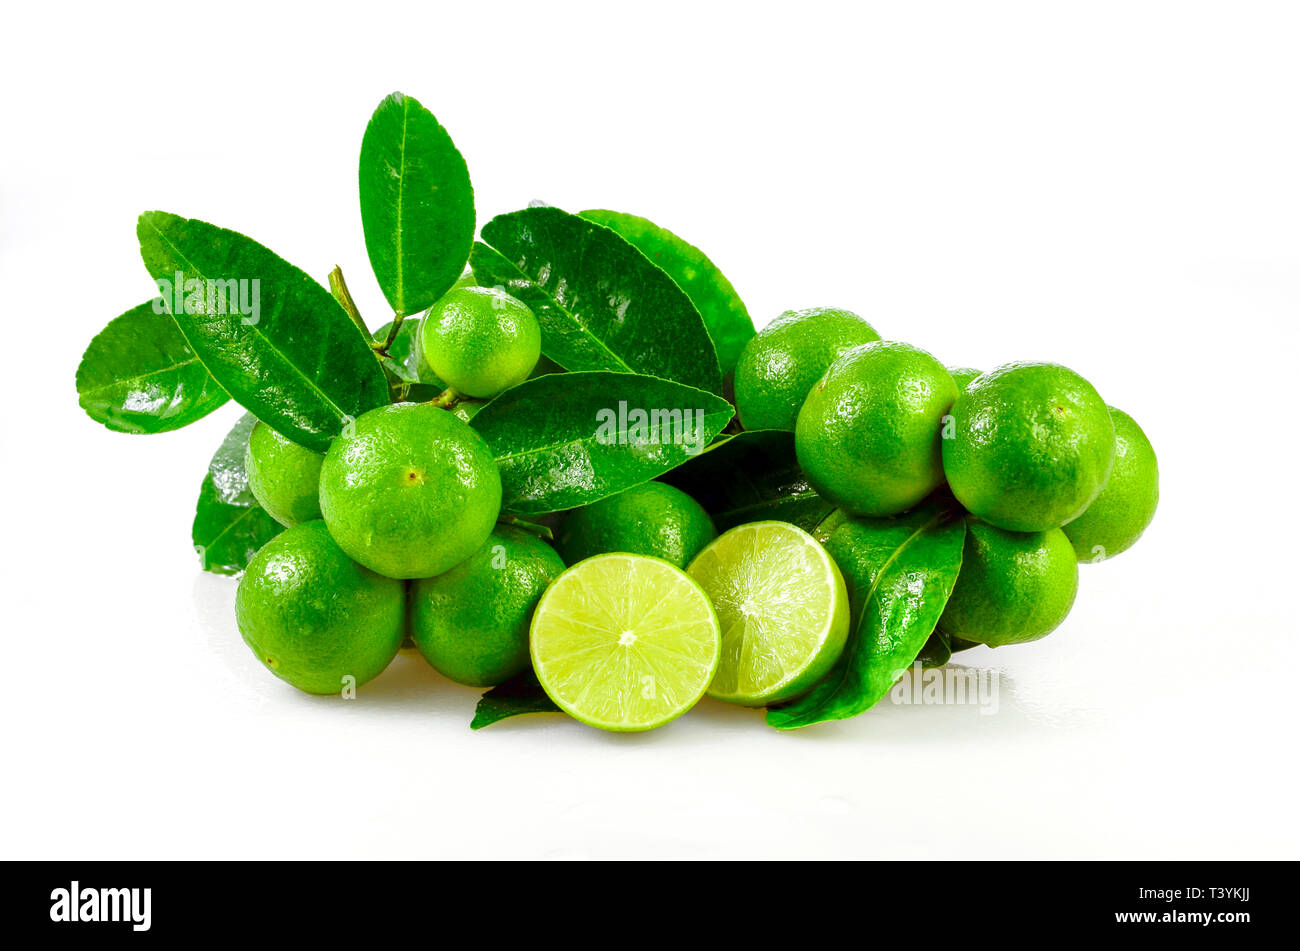 Samenlose Früchte bio Limette (Citrus aurantifolia) auf weißem Hintergrund. Stockfoto